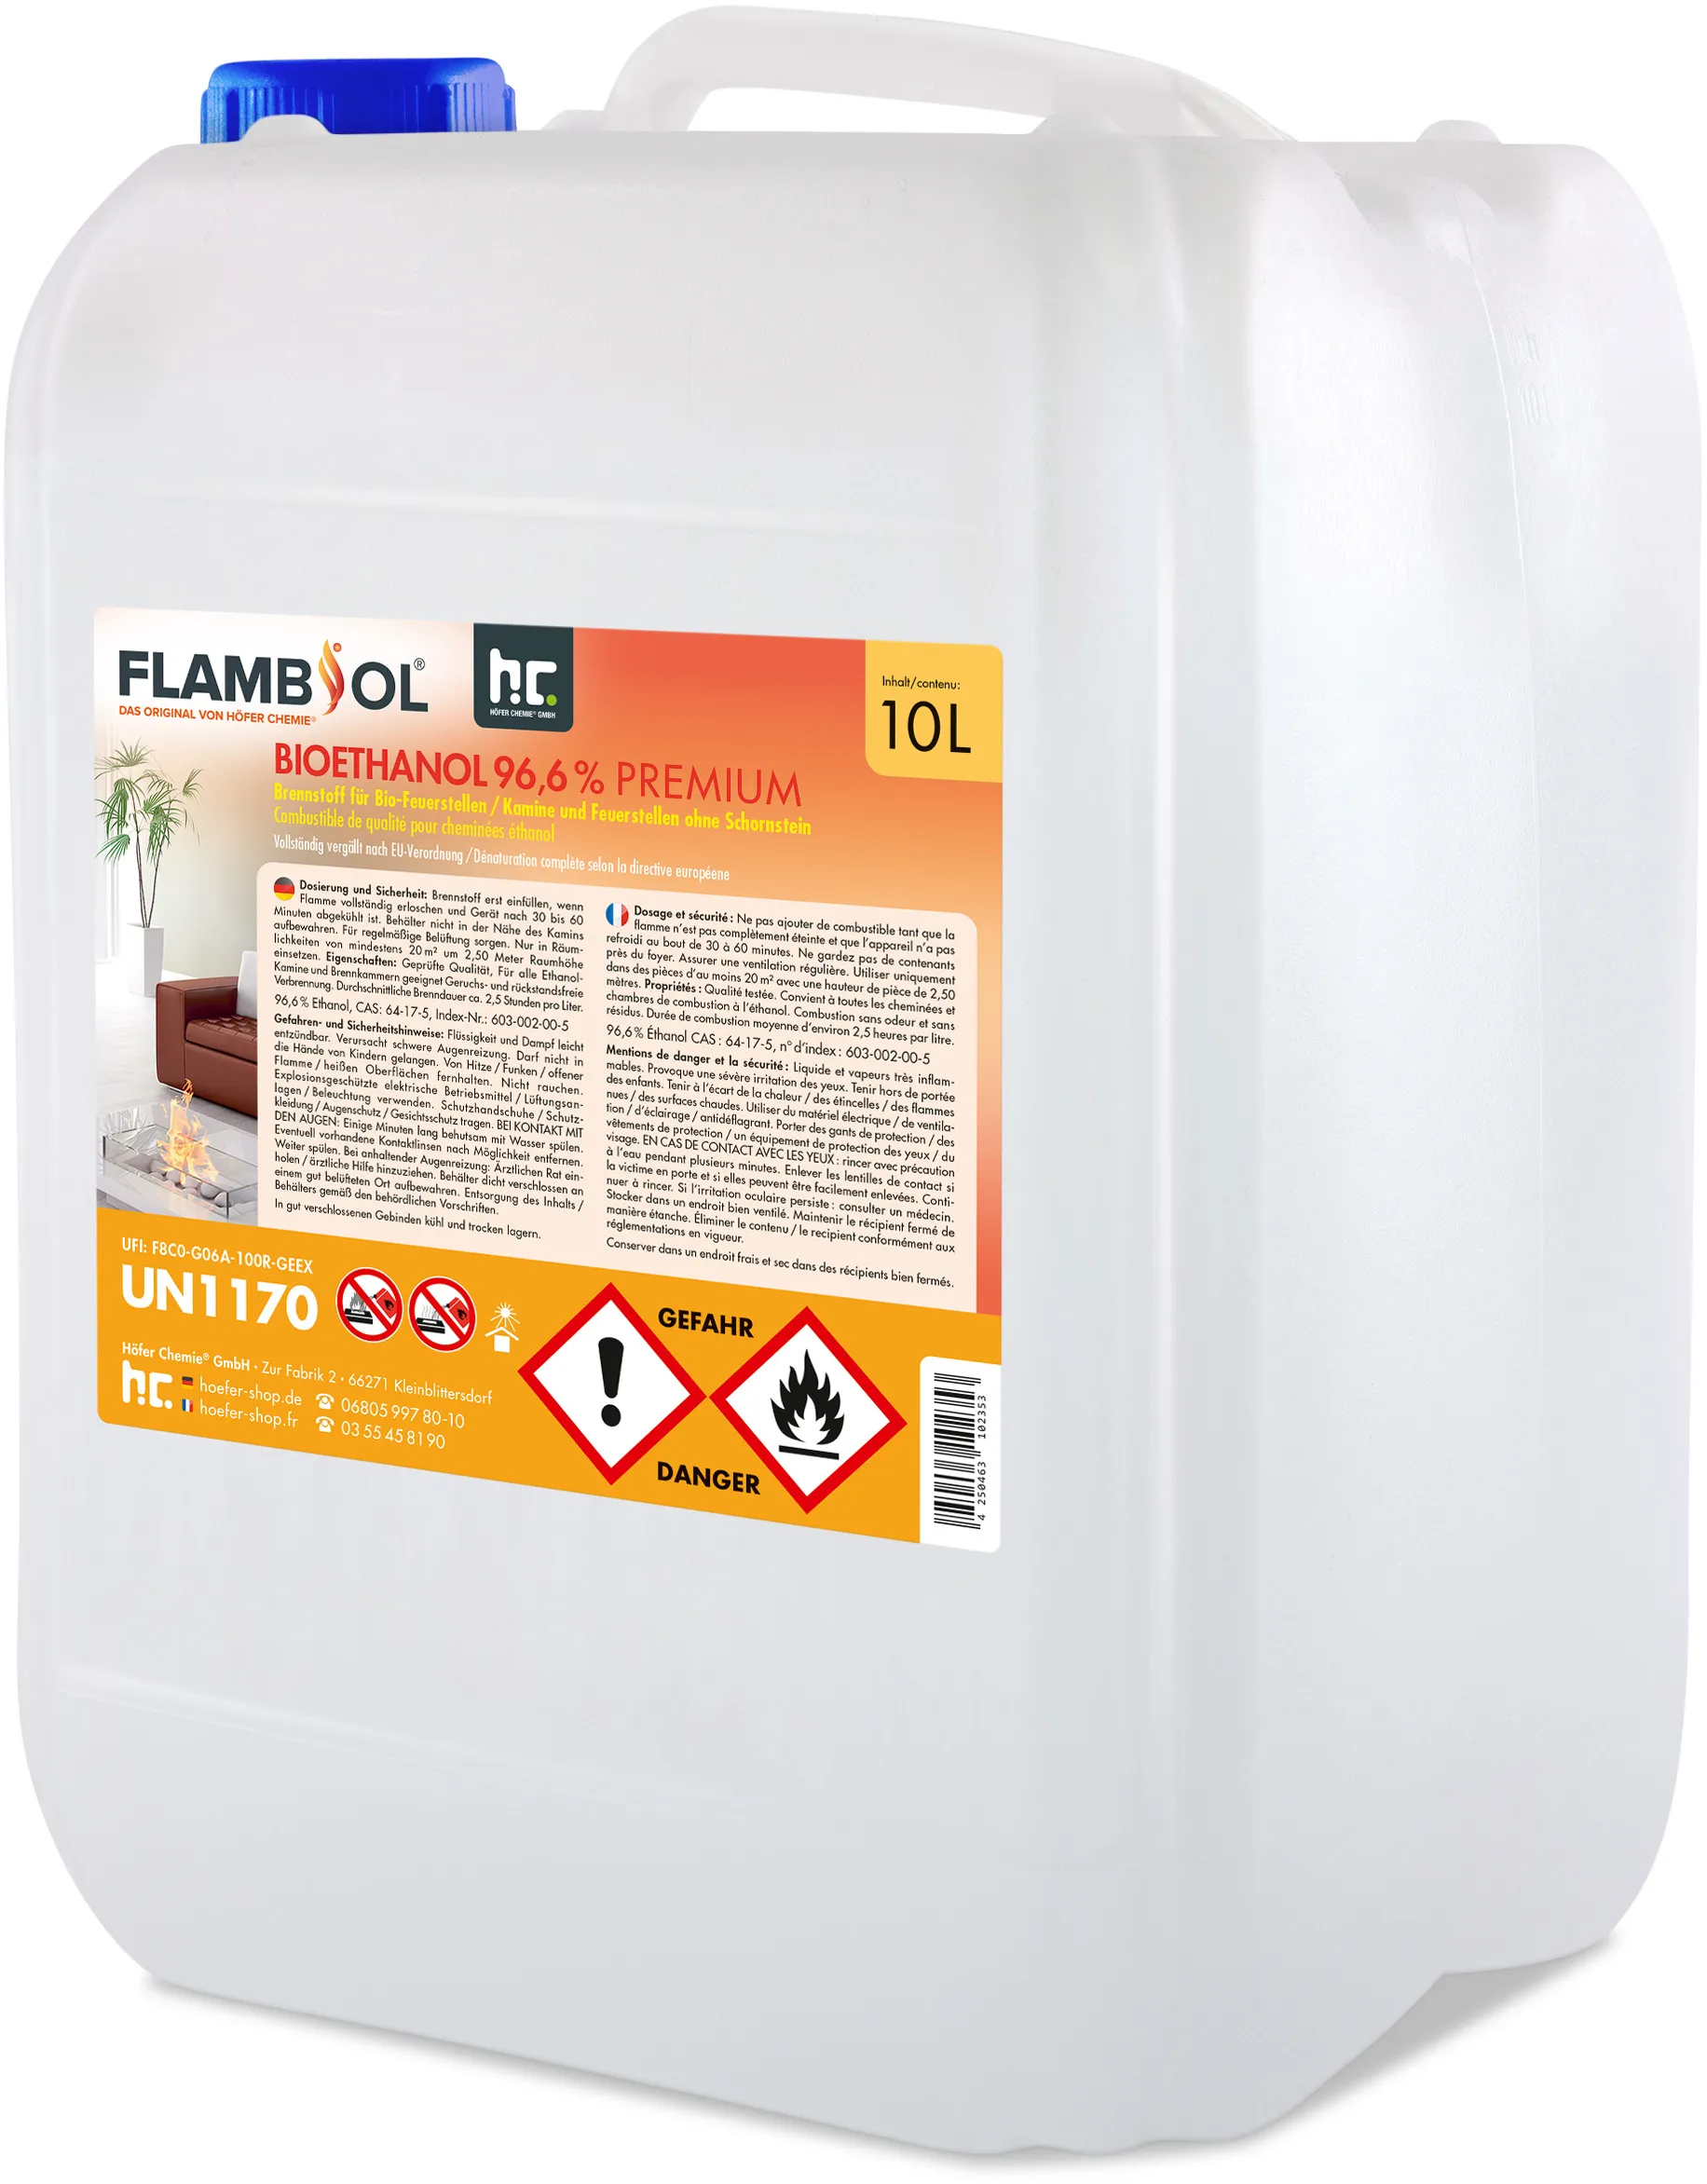 40 x 10 L FLAMBIOL® Bioéthanol 96,6% Premium pour cheminée à éthanol en bidons